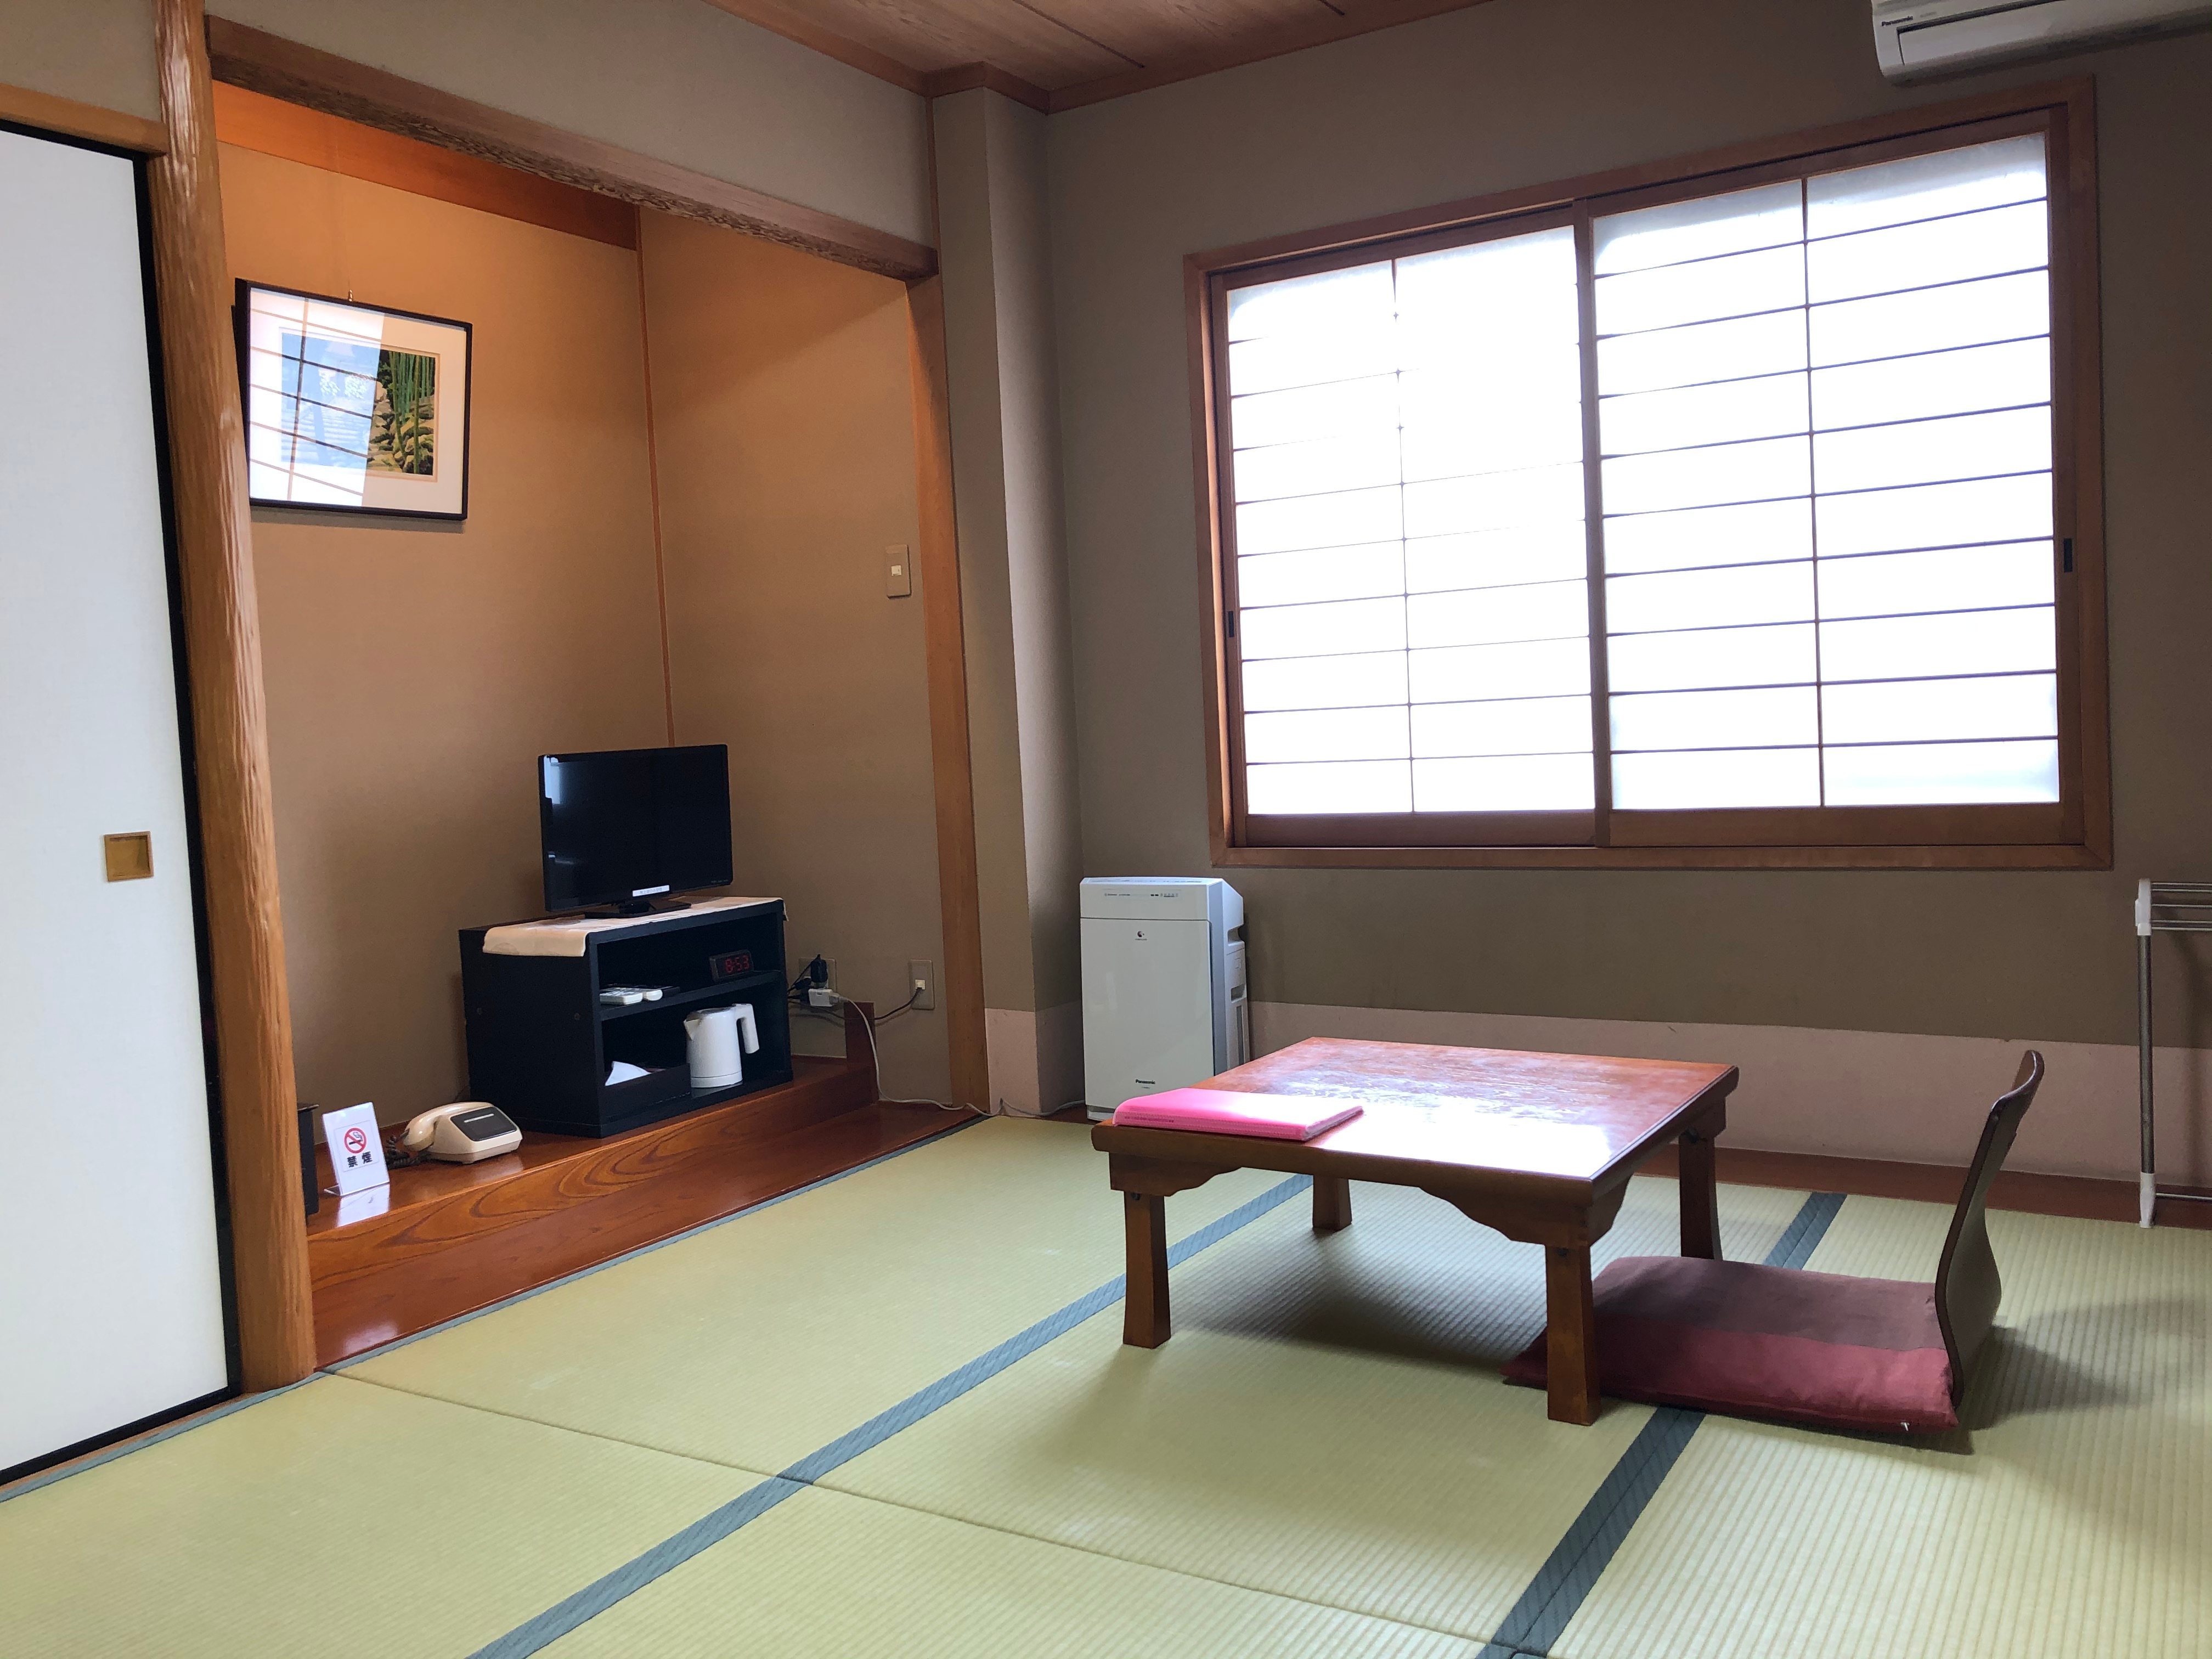 ตัวอย่างห้อง: ห้องสไตล์ญี่ปุ่นสำหรับ 1 ท่าน